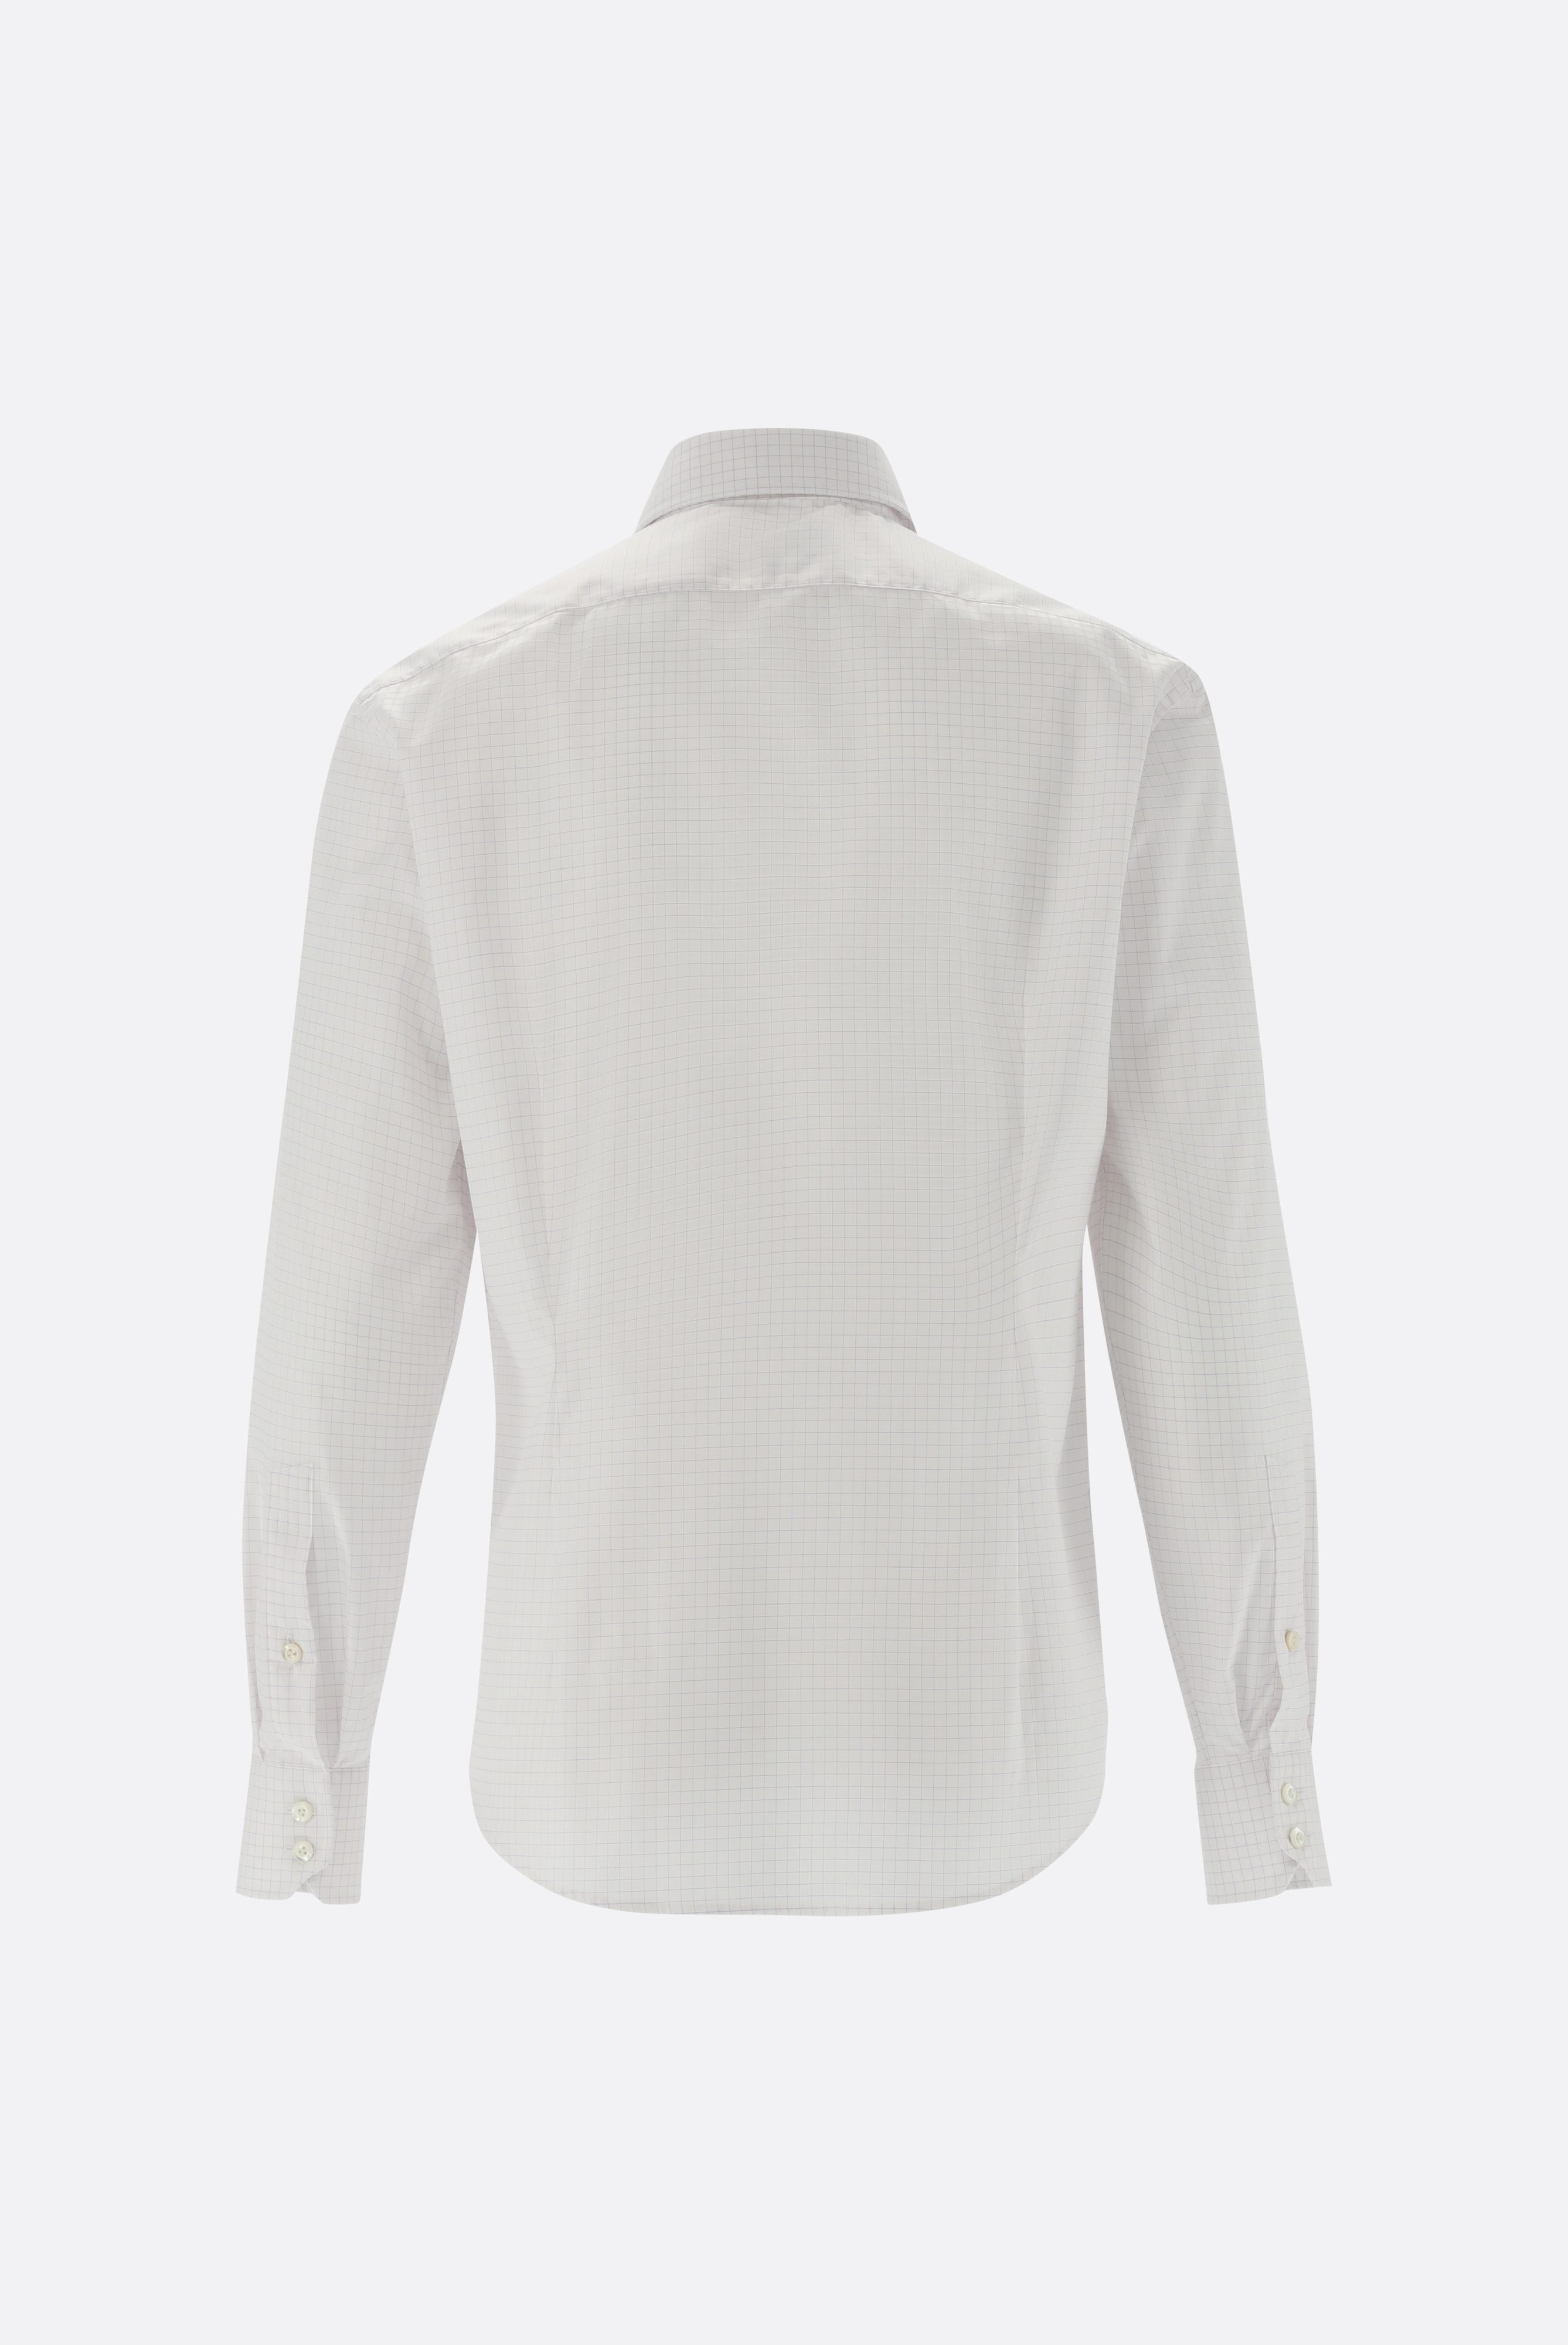 Bügelleichte Hemden+Kariertes Bügelfreies Twill-Hemd Tailor Fit+20.2020.BQ.161105.006.40